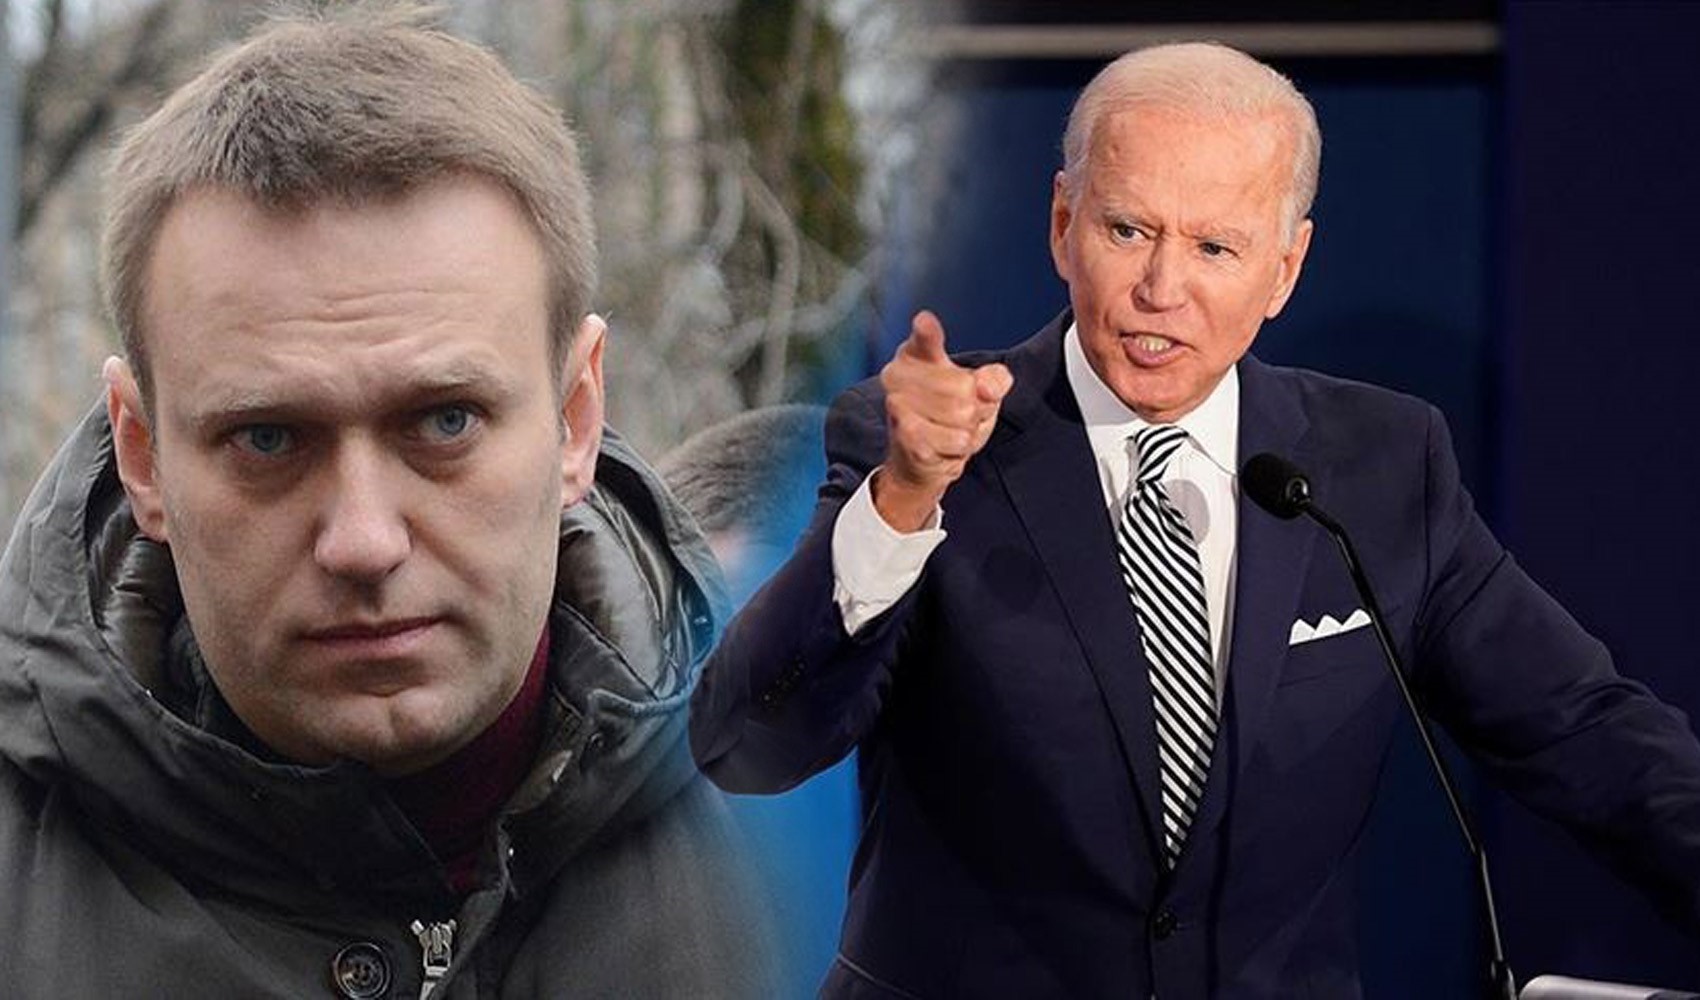 ABD Başkanı Biden: “Şüphesiz ki Putin, Navalny'nin ölümünden sorumludur”